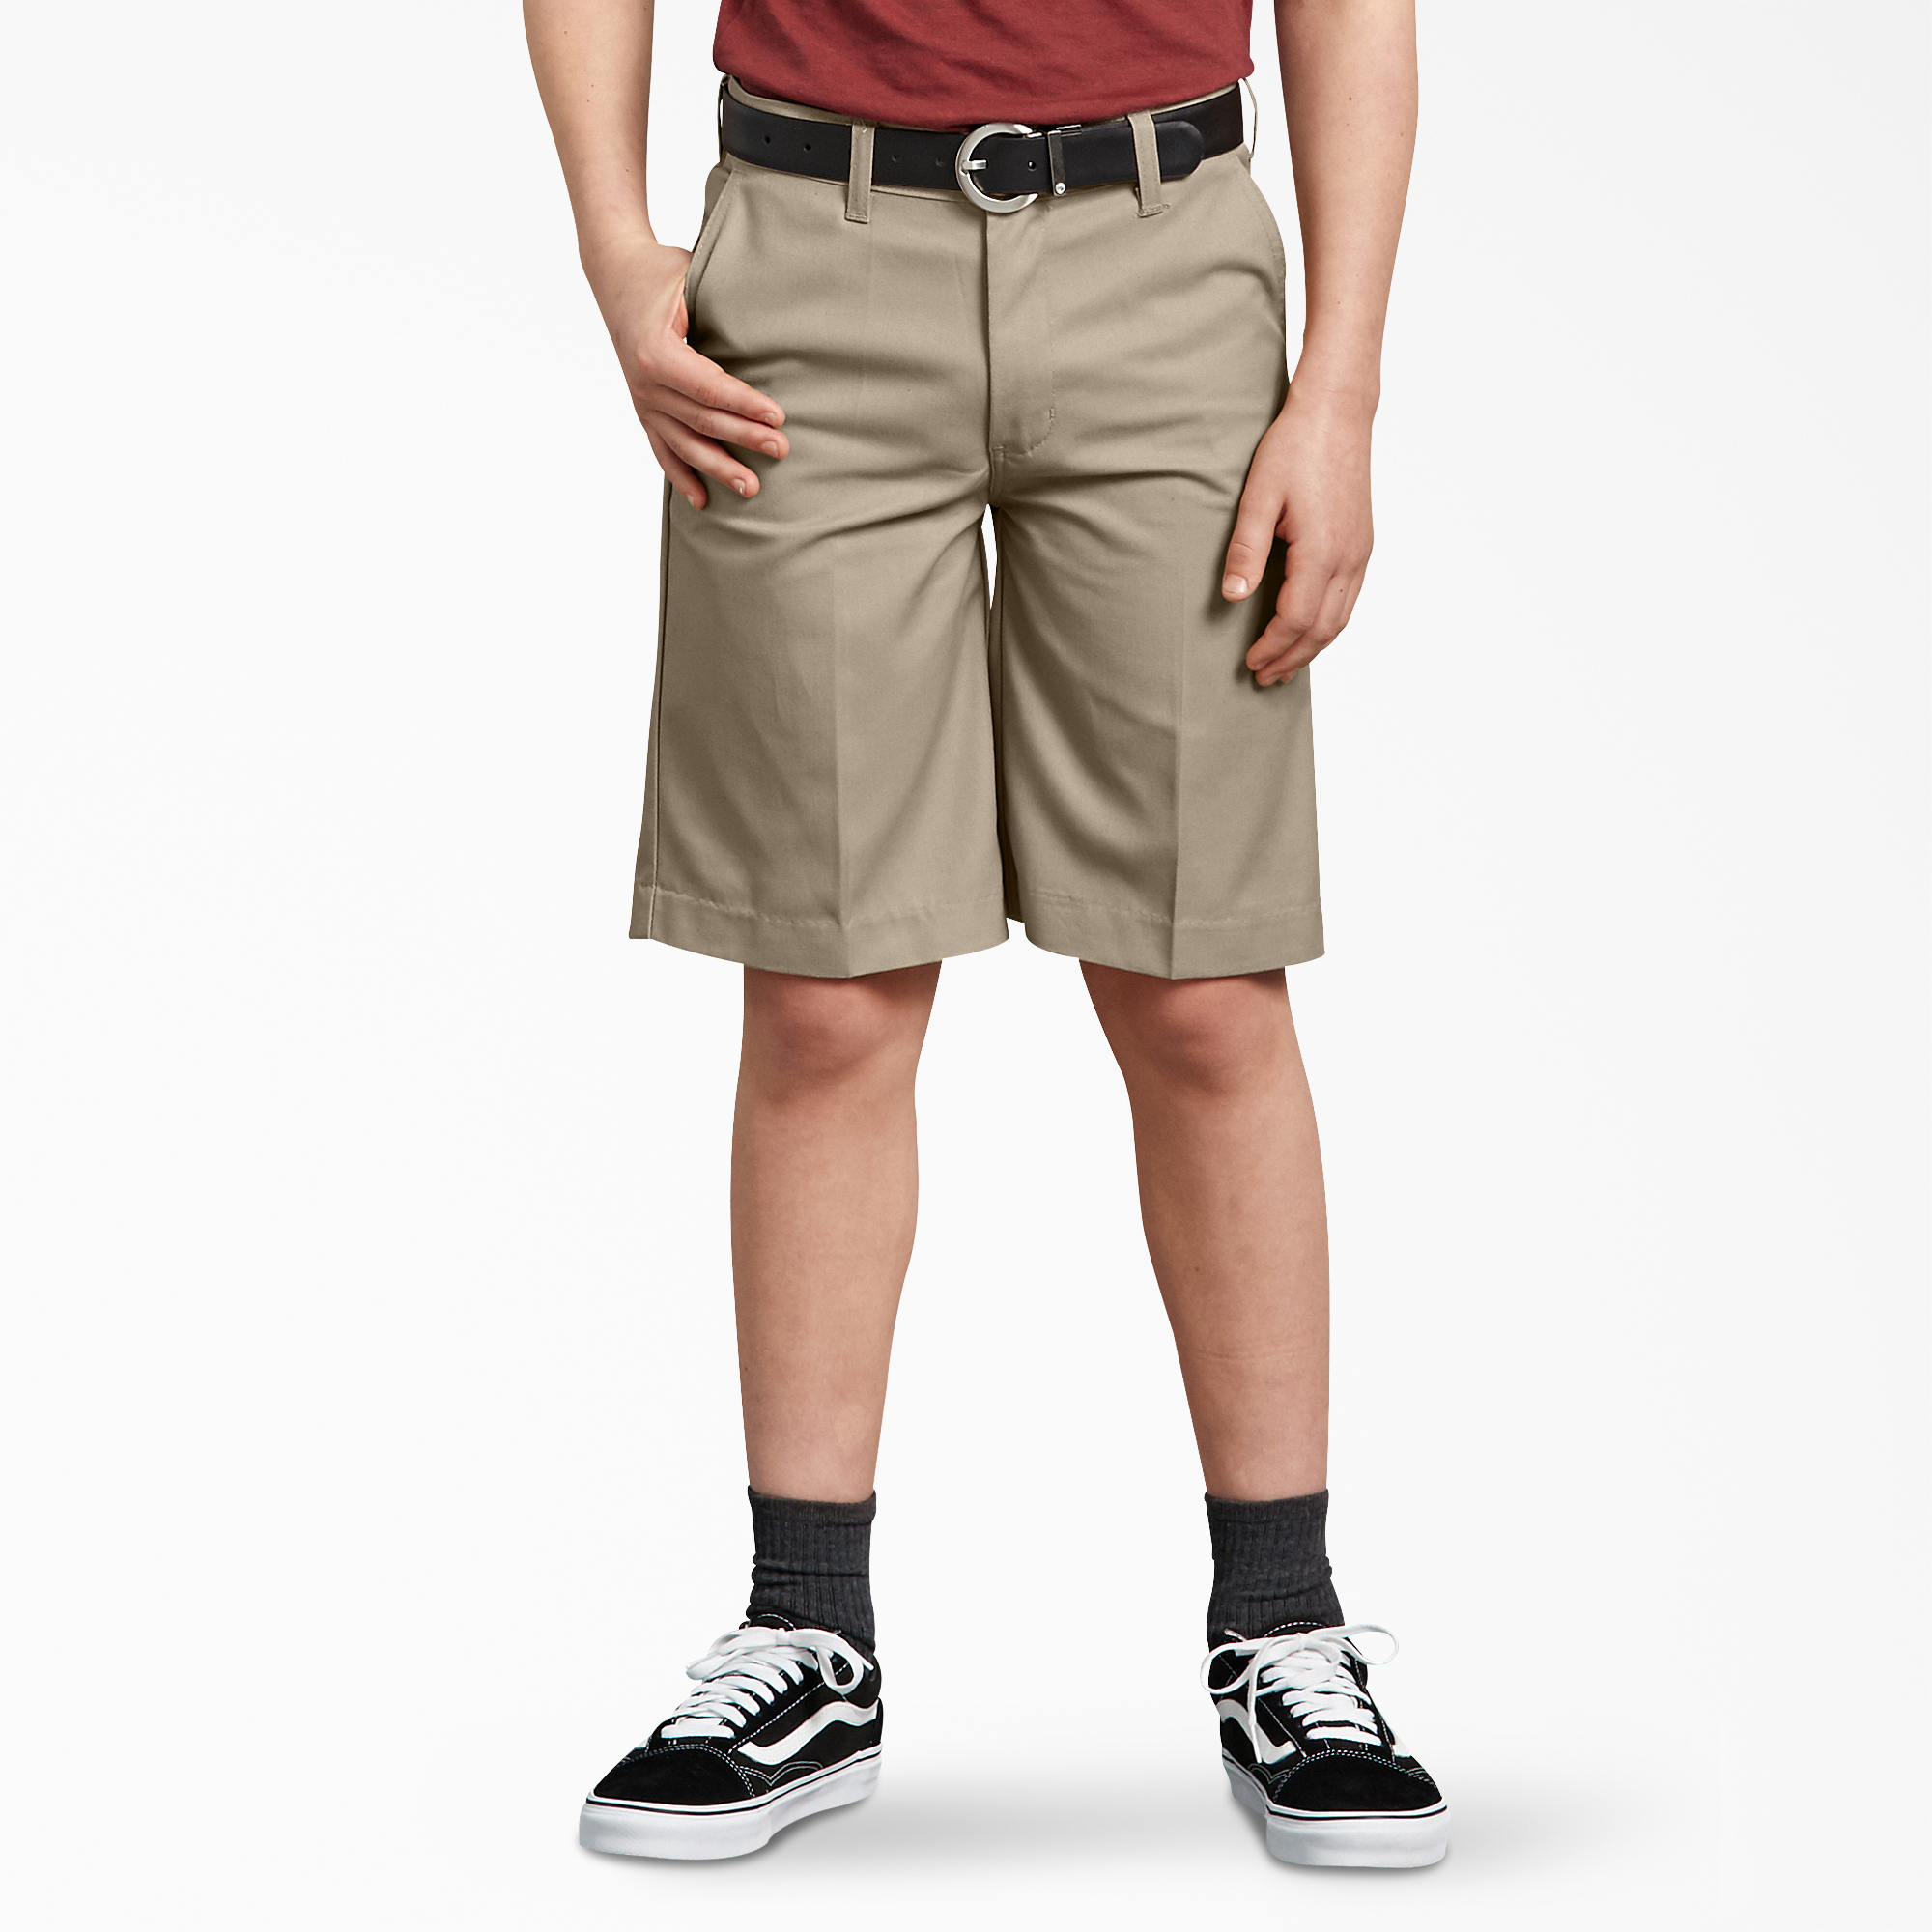 Boys' Shorts - Cargo, Twill & Khaki Shorts for Boys, Tan Size 7, 8 | Dickies